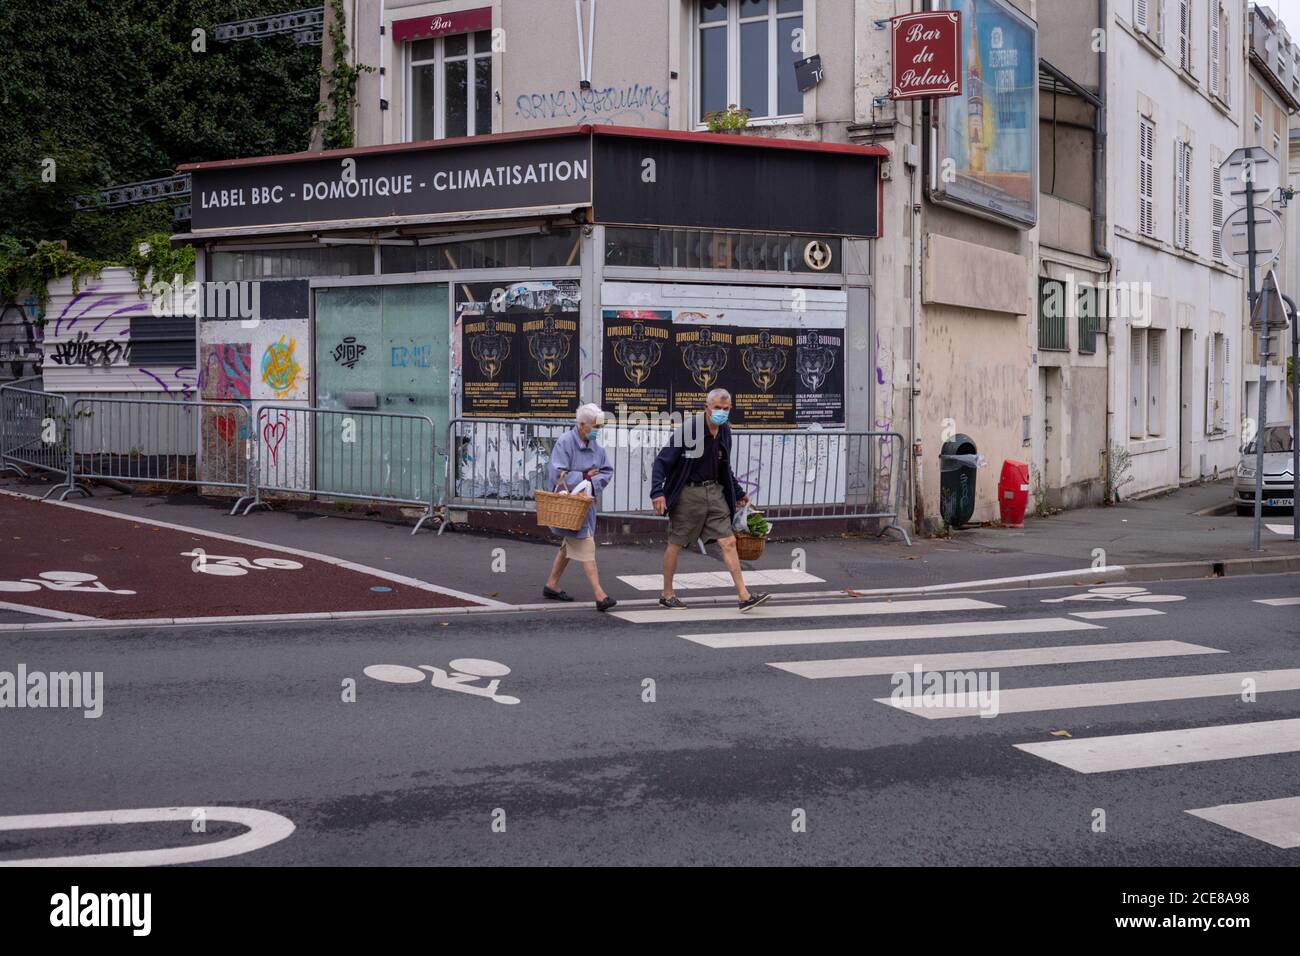 Angers, Frankreich - August 29 2020: Menschen mit Gesichtsschutzmaske beim Überqueren der Straße nach dem Einkaufen auf dem Marktplatz in Frankreich um Coronavirus zu verhindern, Konzept der Masken im Freien ist obligatorisch, respektieren Barriere Gesten Stockfoto